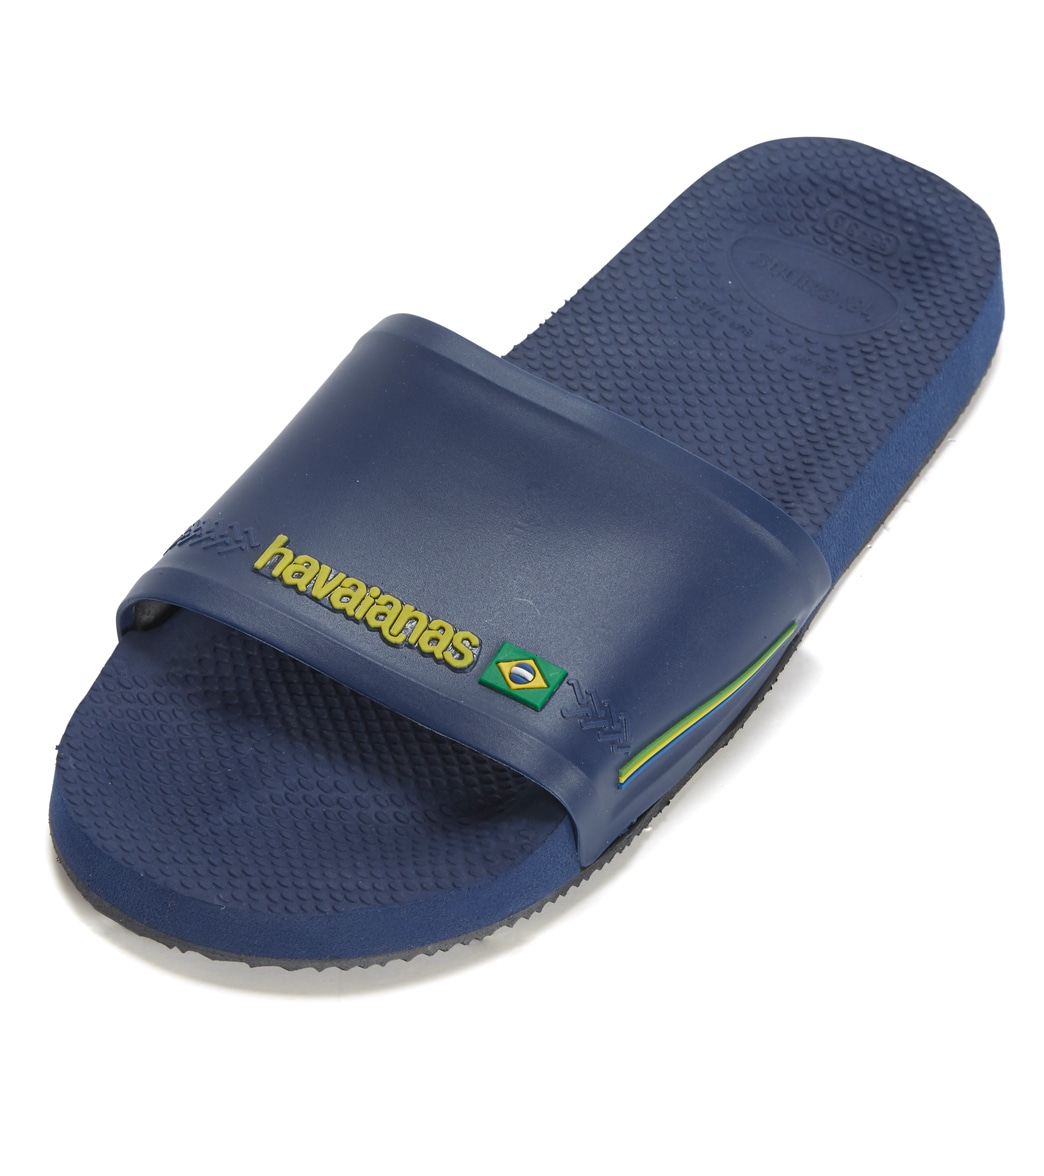 Havaianas Men's Slides Brazil Sandals - Navy Blue 13 - Swimoutlet.com